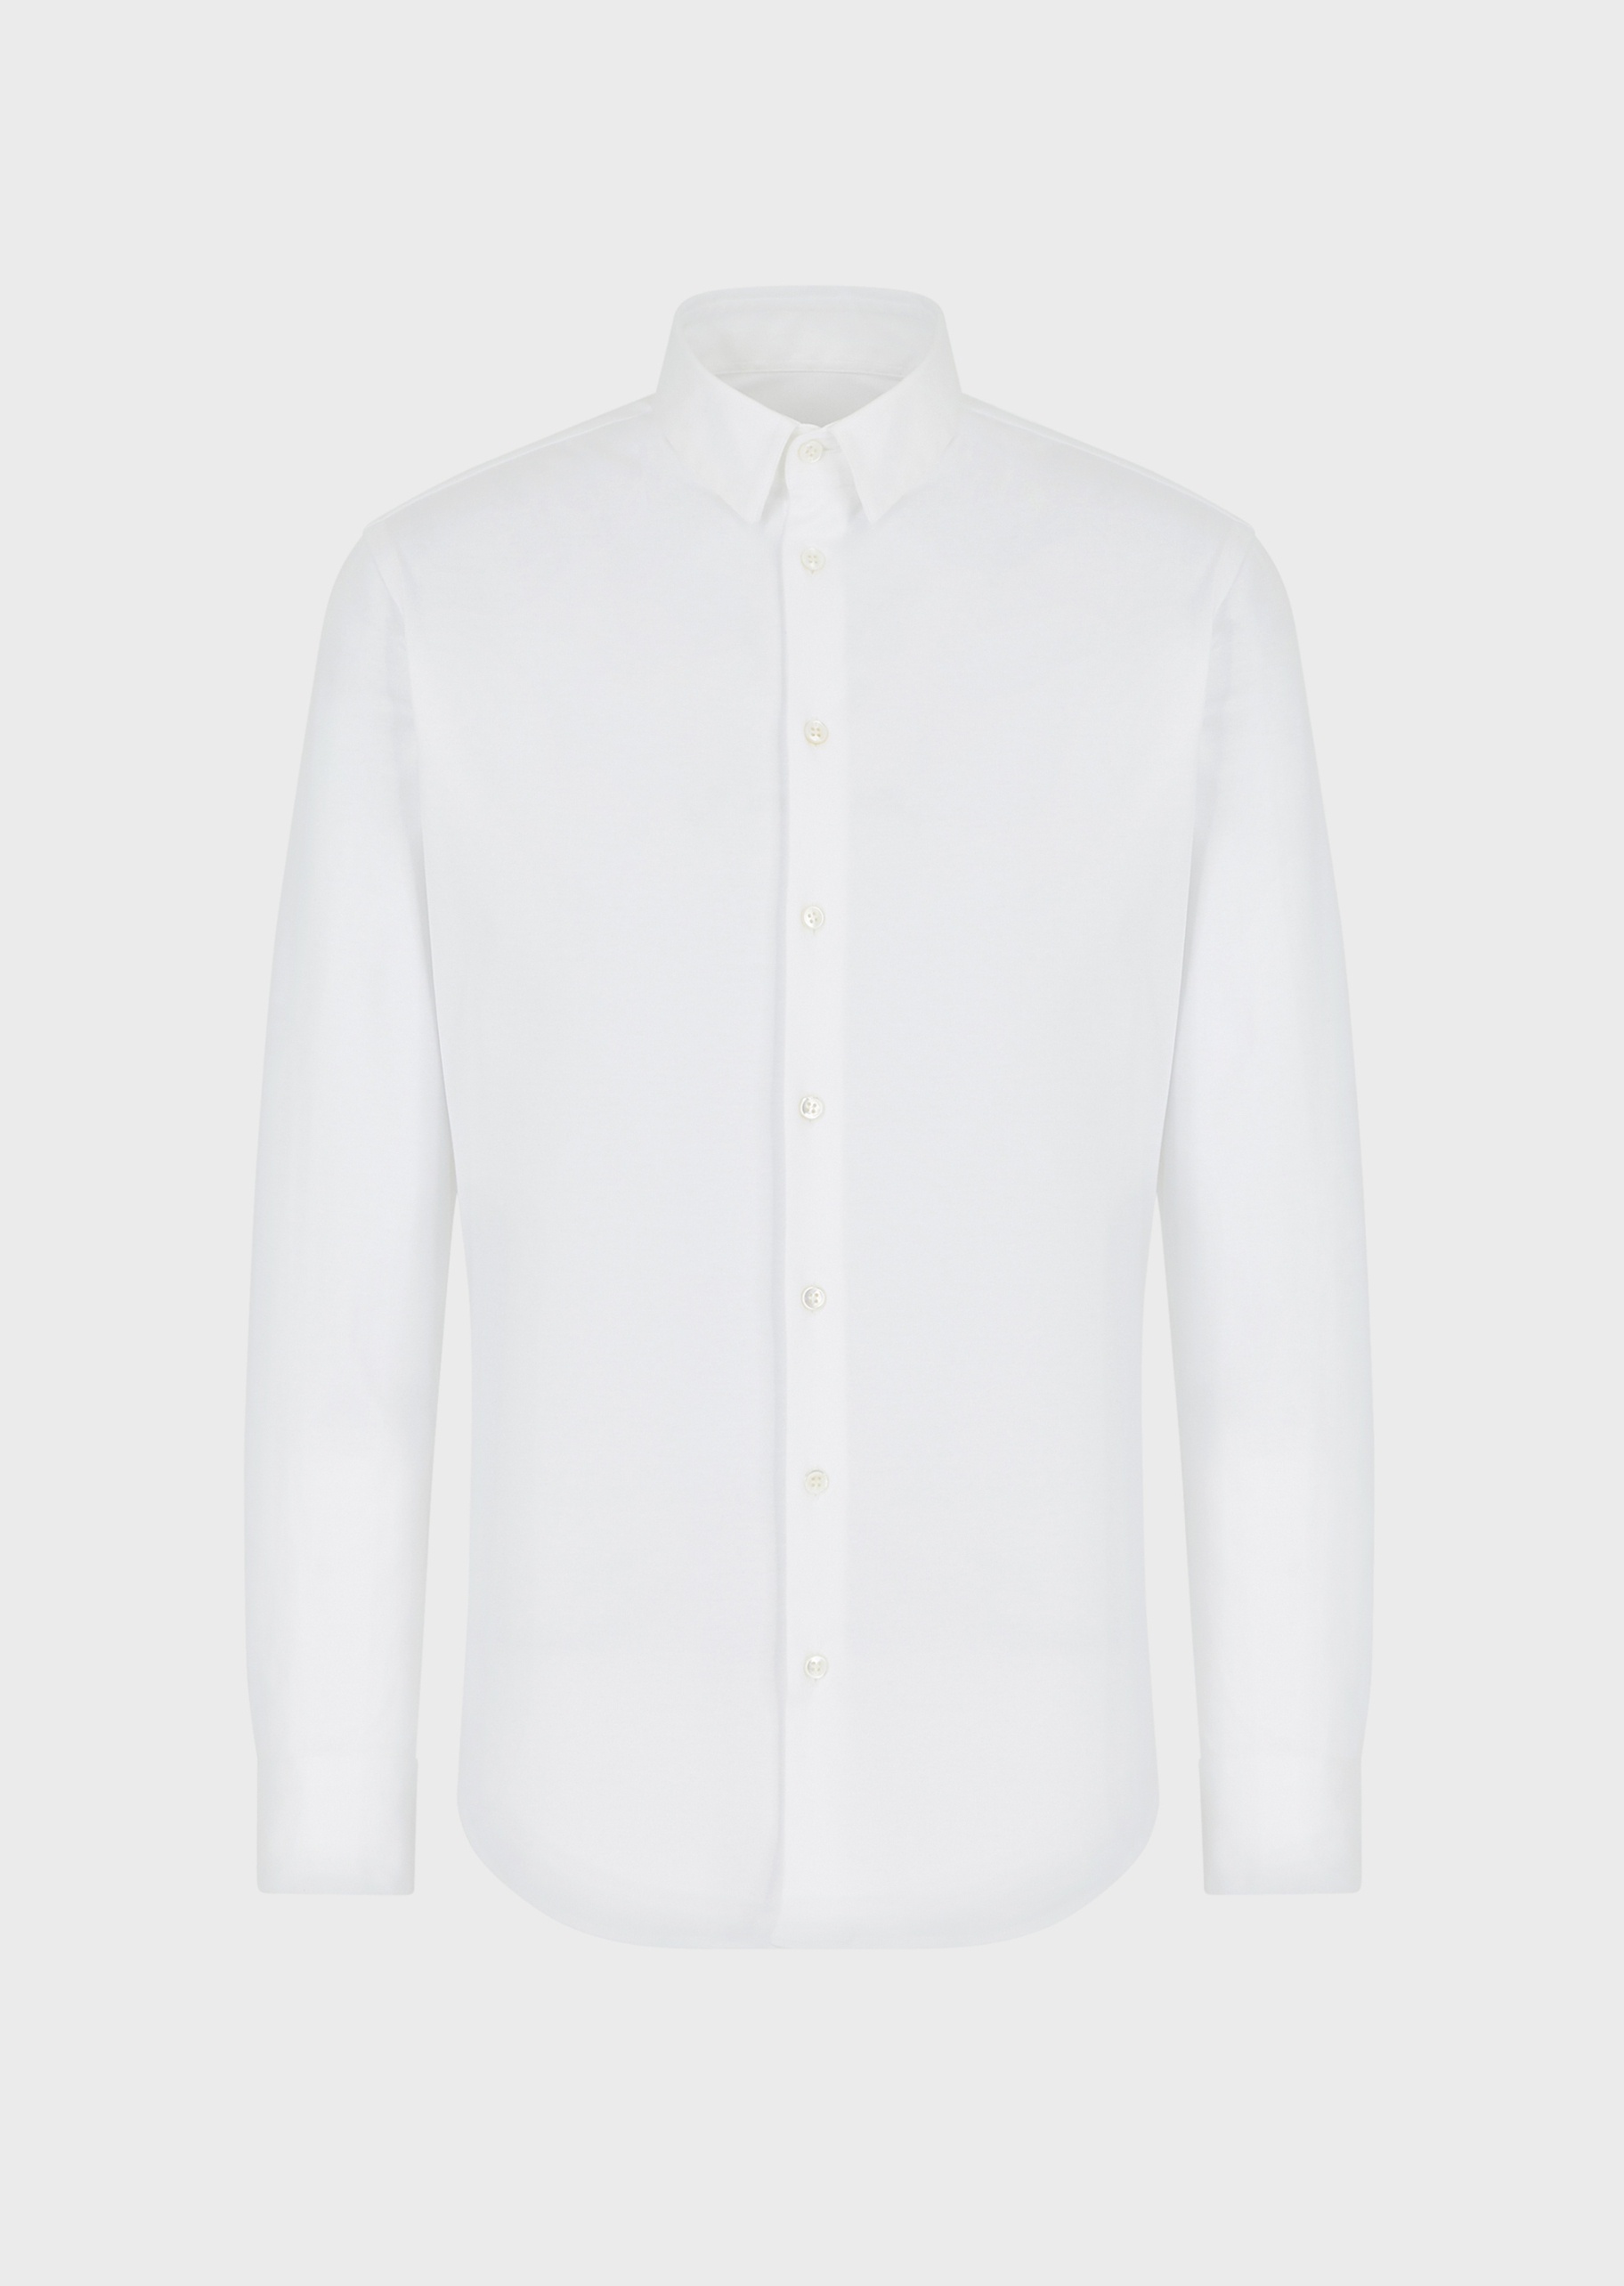 Giorgio Armani 男士全棉修身长袖翻领休闲商务衬衫